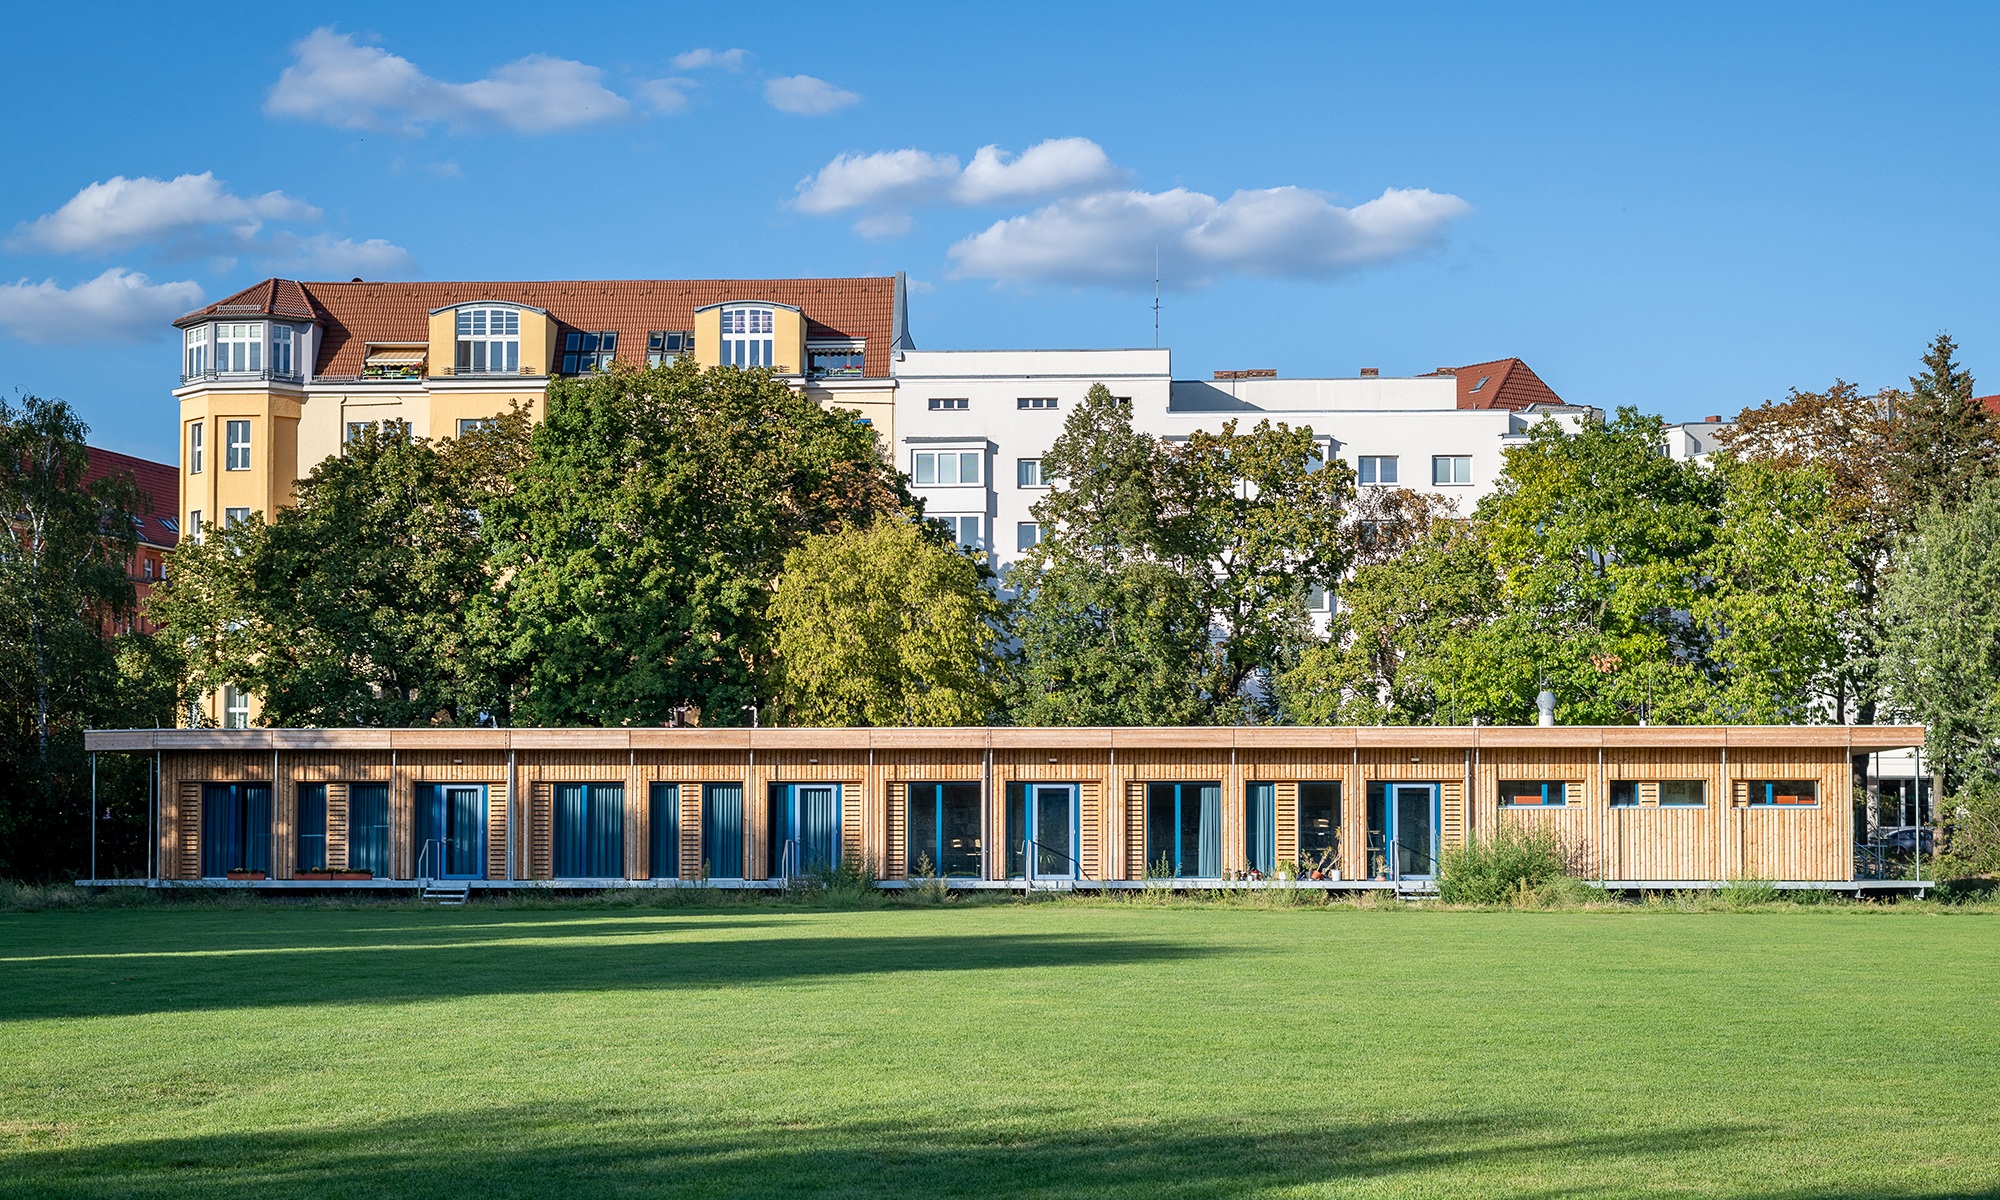 Visuel d’une école temporaire d’un étage à Berlin Schönefeld. La façade en bois se détache de la prairie verte et du ciel bleu.